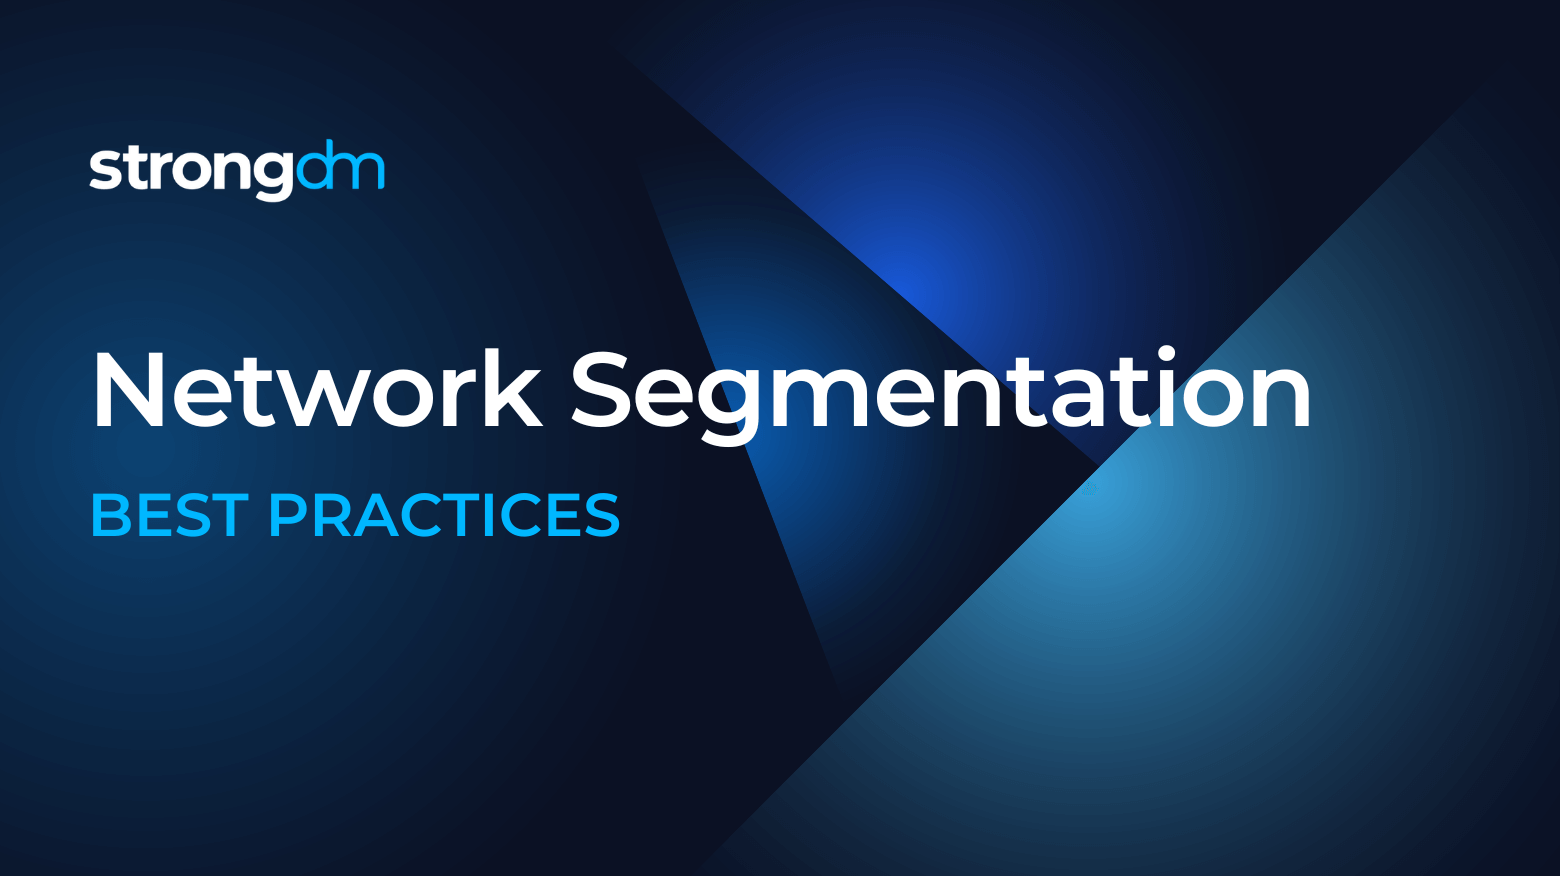 Network Segmentation best practices